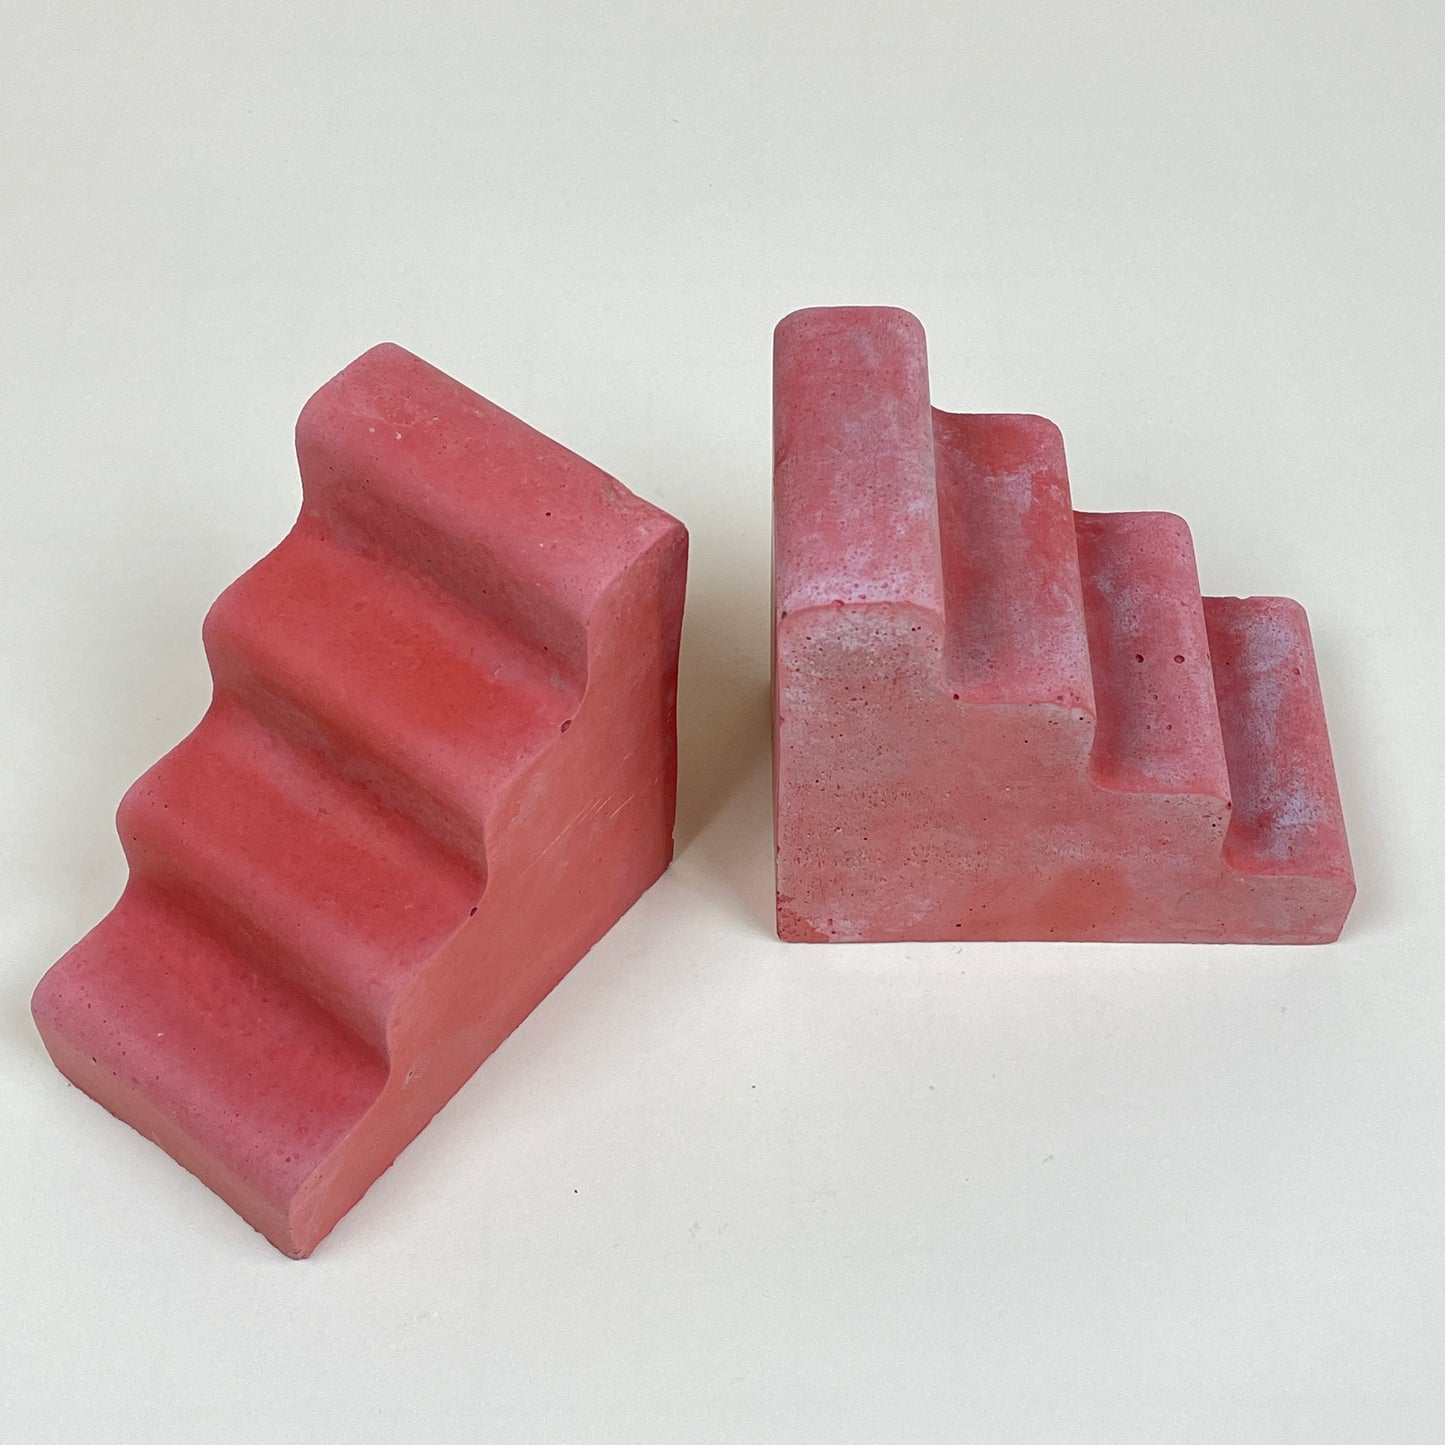 Pair of red concrete bookends by Clara von Zweigbergk